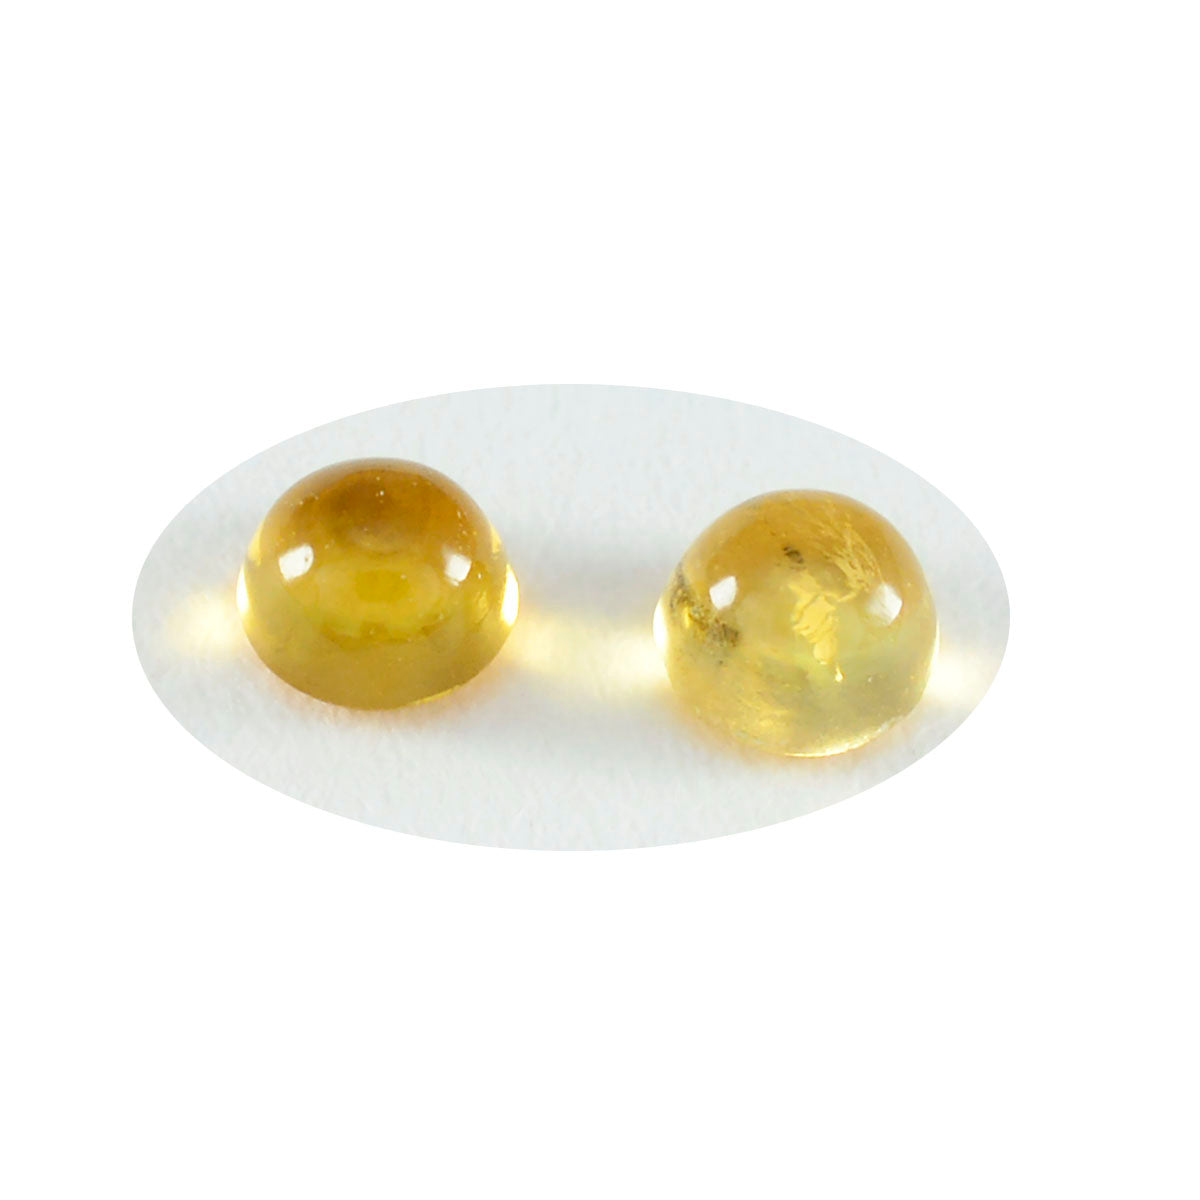 riyogems 1шт желтый цитрин кабошон 9x9 мм круглая форма превосходное качество россыпь драгоценных камней